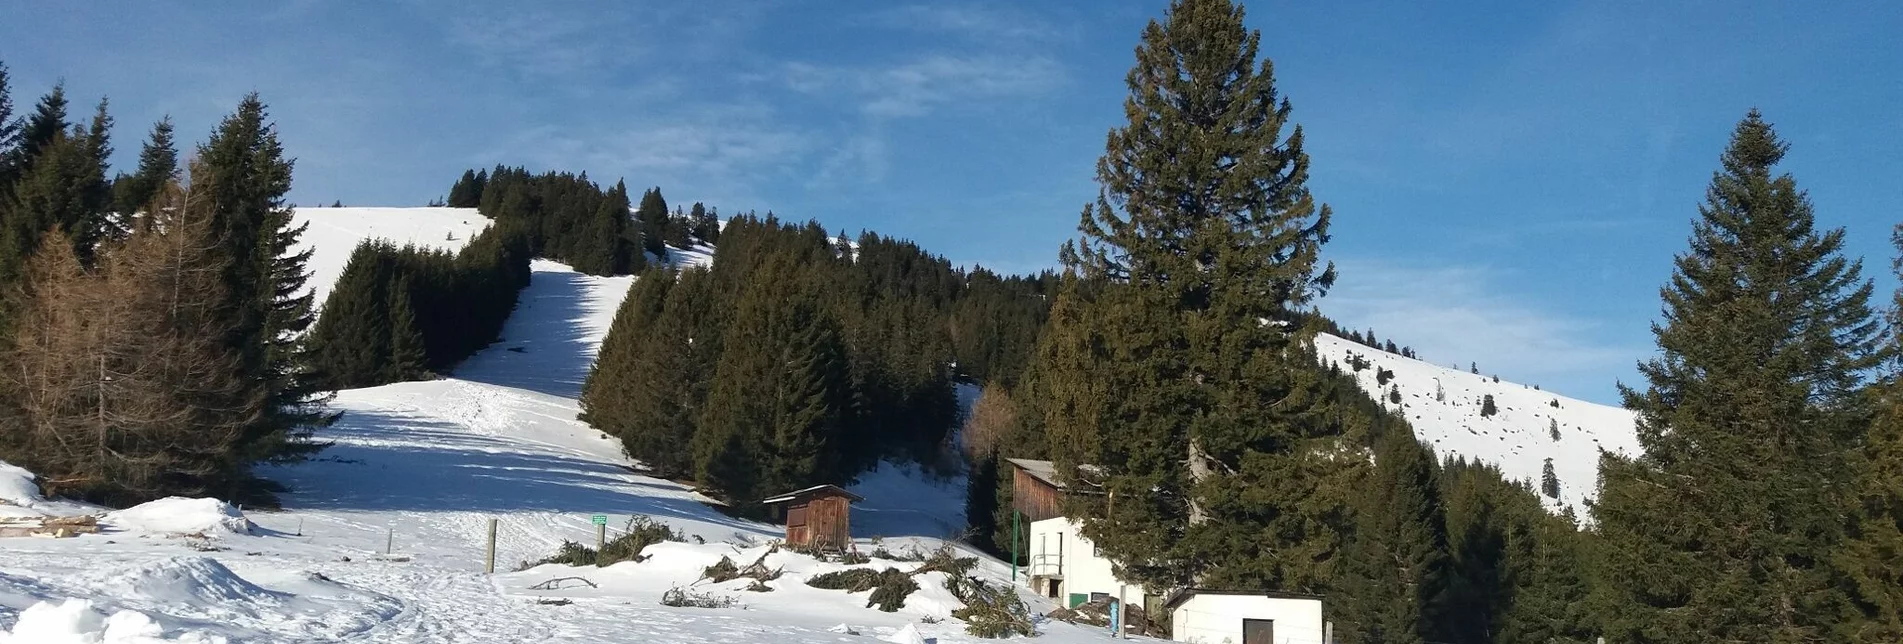 Snowshoe walking Unberührte Gaberl-Runde - Touren-Impression #1 | © Region Graz